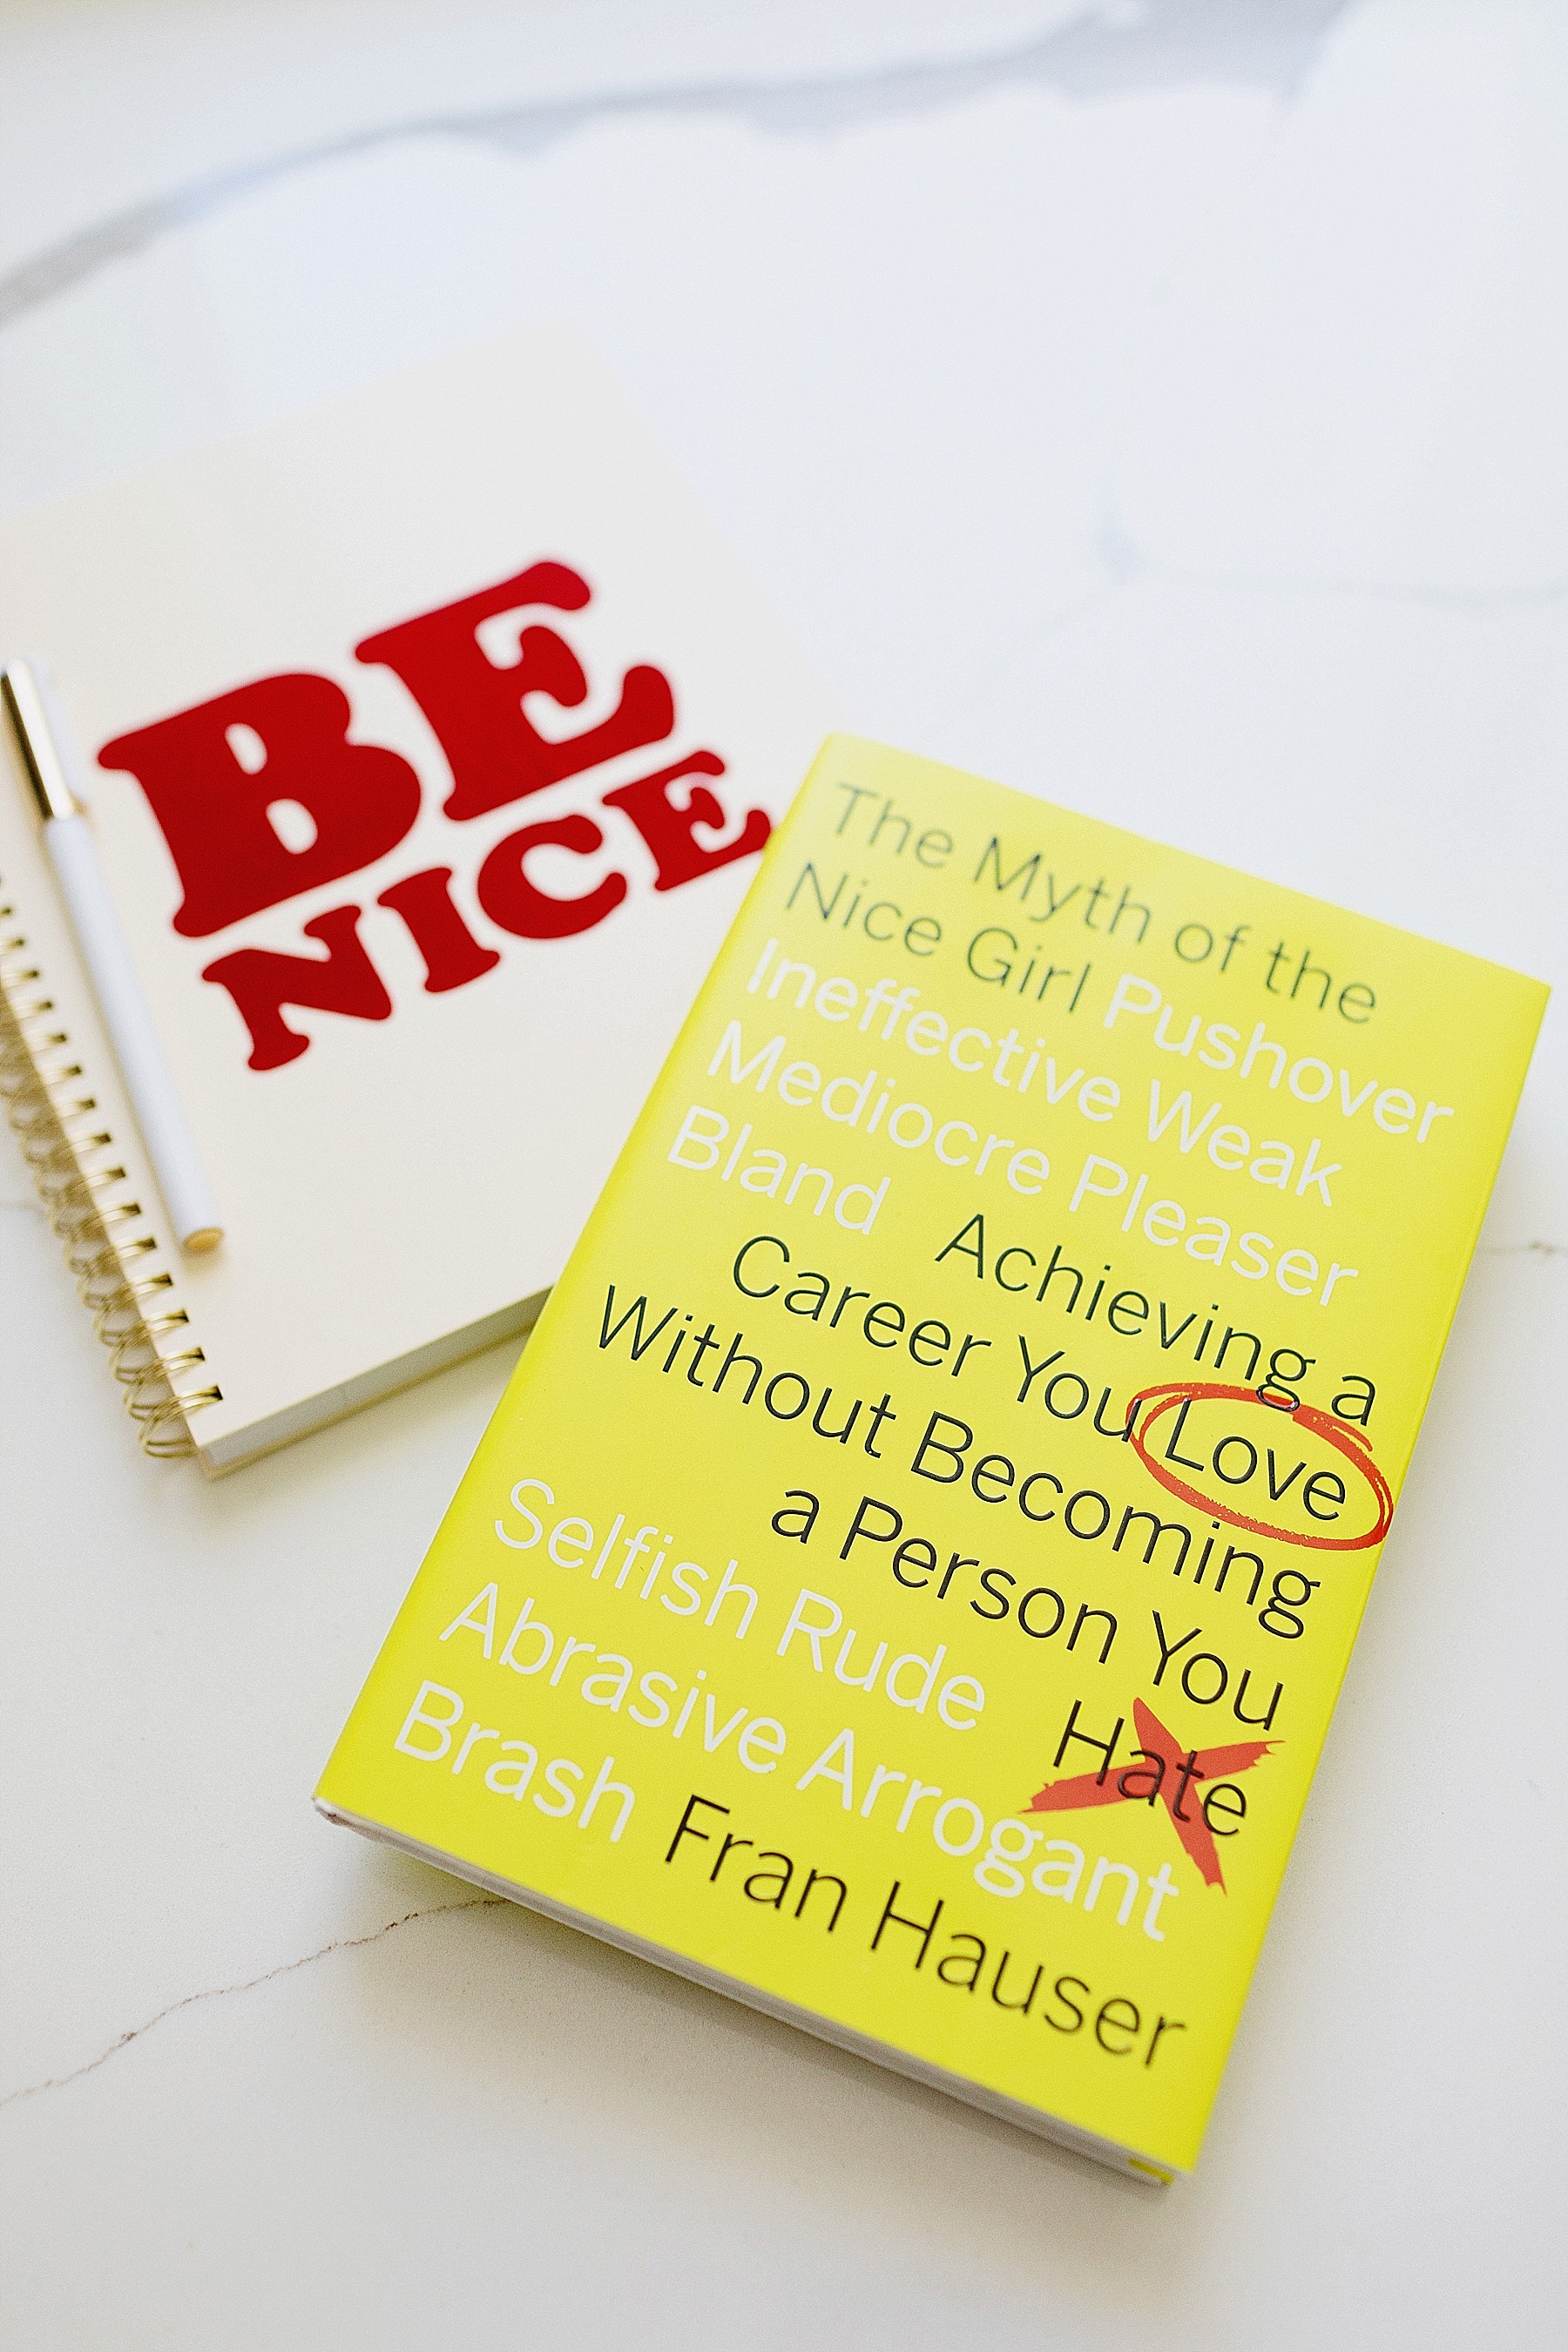 The Myth Of A Nice Girl work career advice book